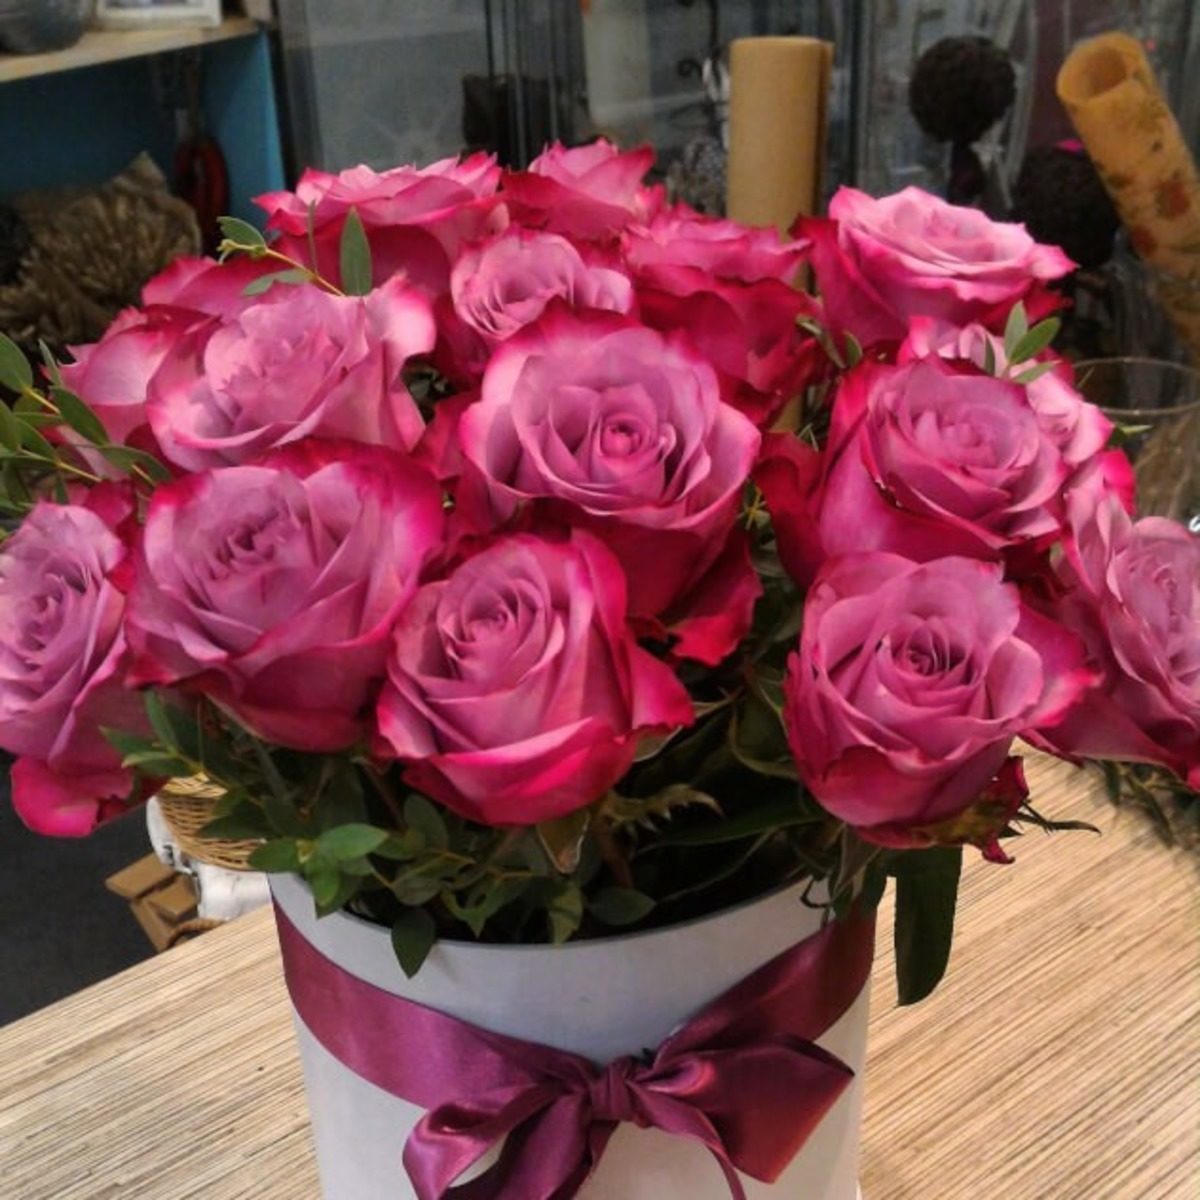 Фото реальных букетов цветов дома. Букет цветов на столе. Букет роз в доме. Букет роз дома. Красивый букет дома.